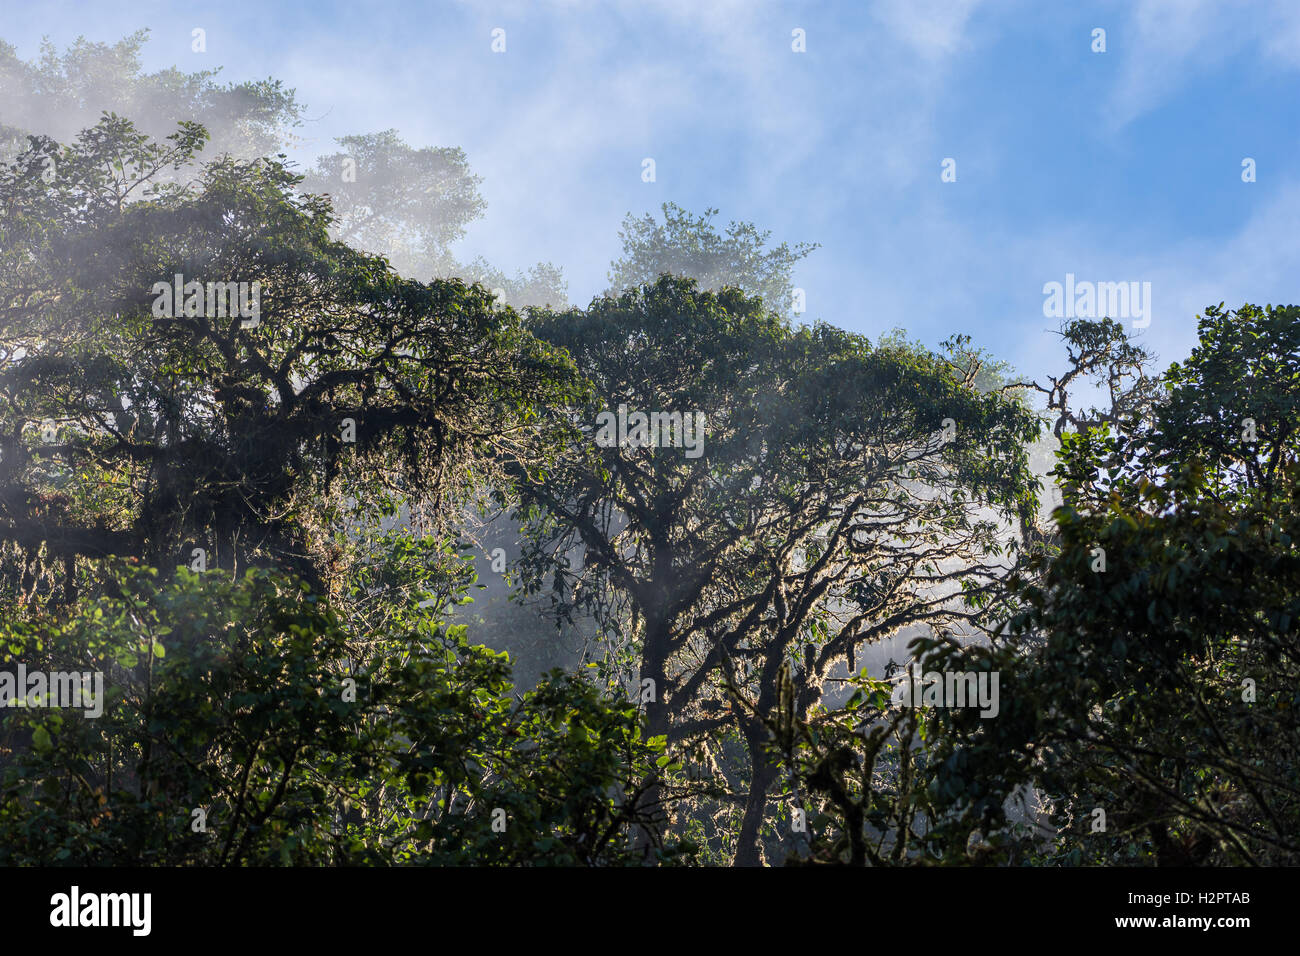 El vapor de agua se eleva sobre el dosel del bosque en los Andes bosque nuboso. Ecuador, América del Sur. Foto de stock